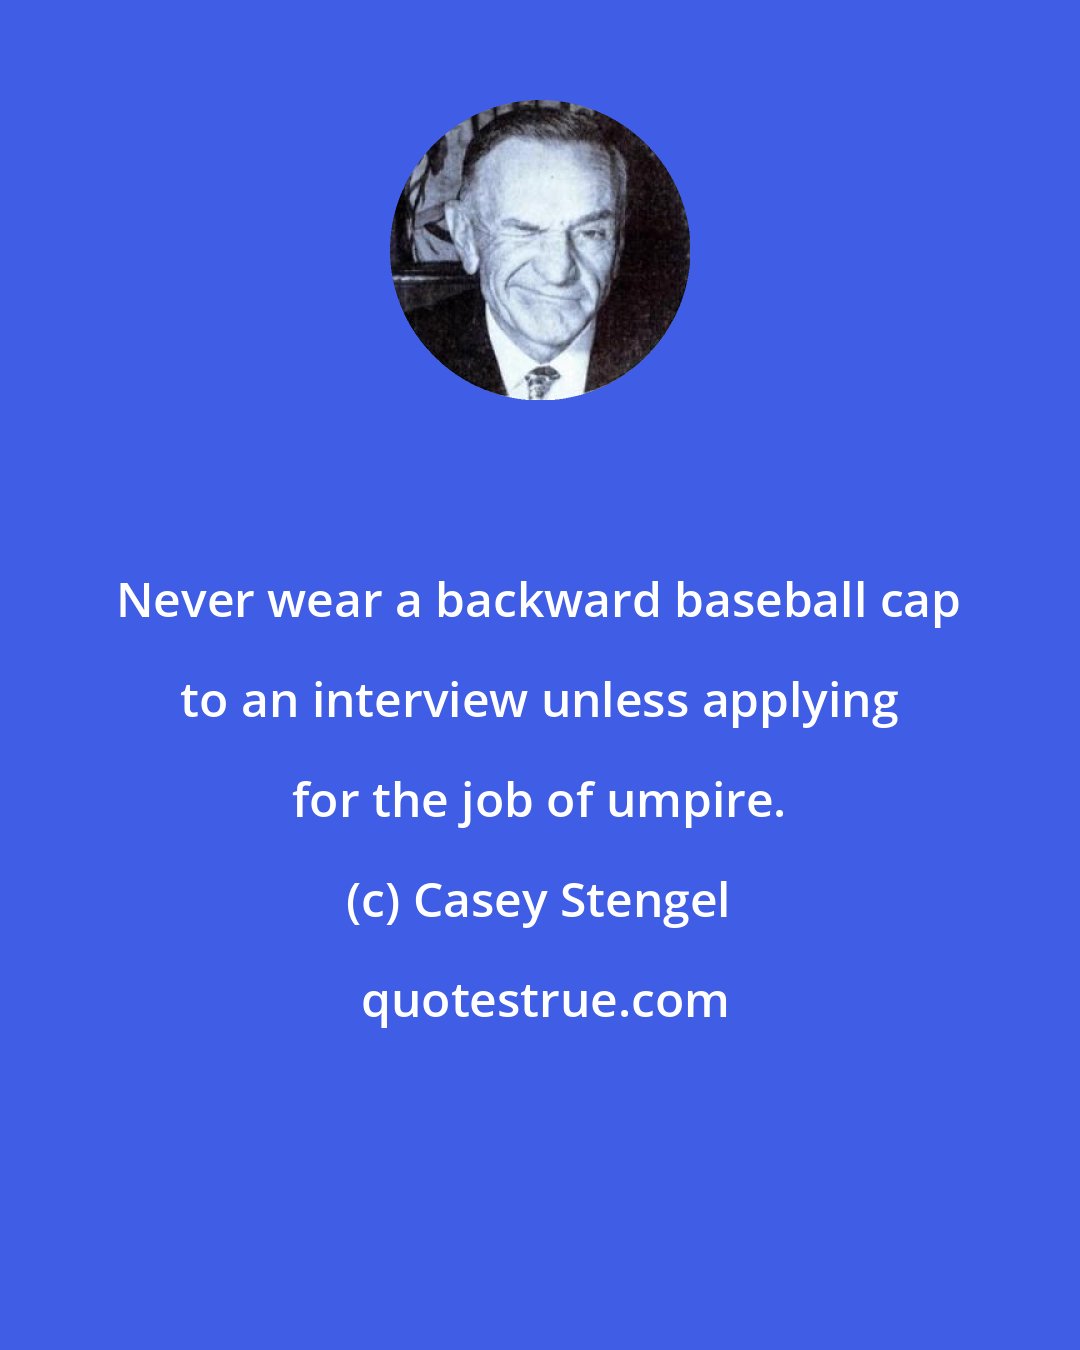 Casey Stengel: Never wear a backward baseball cap to an interview unless applying for the job of umpire.